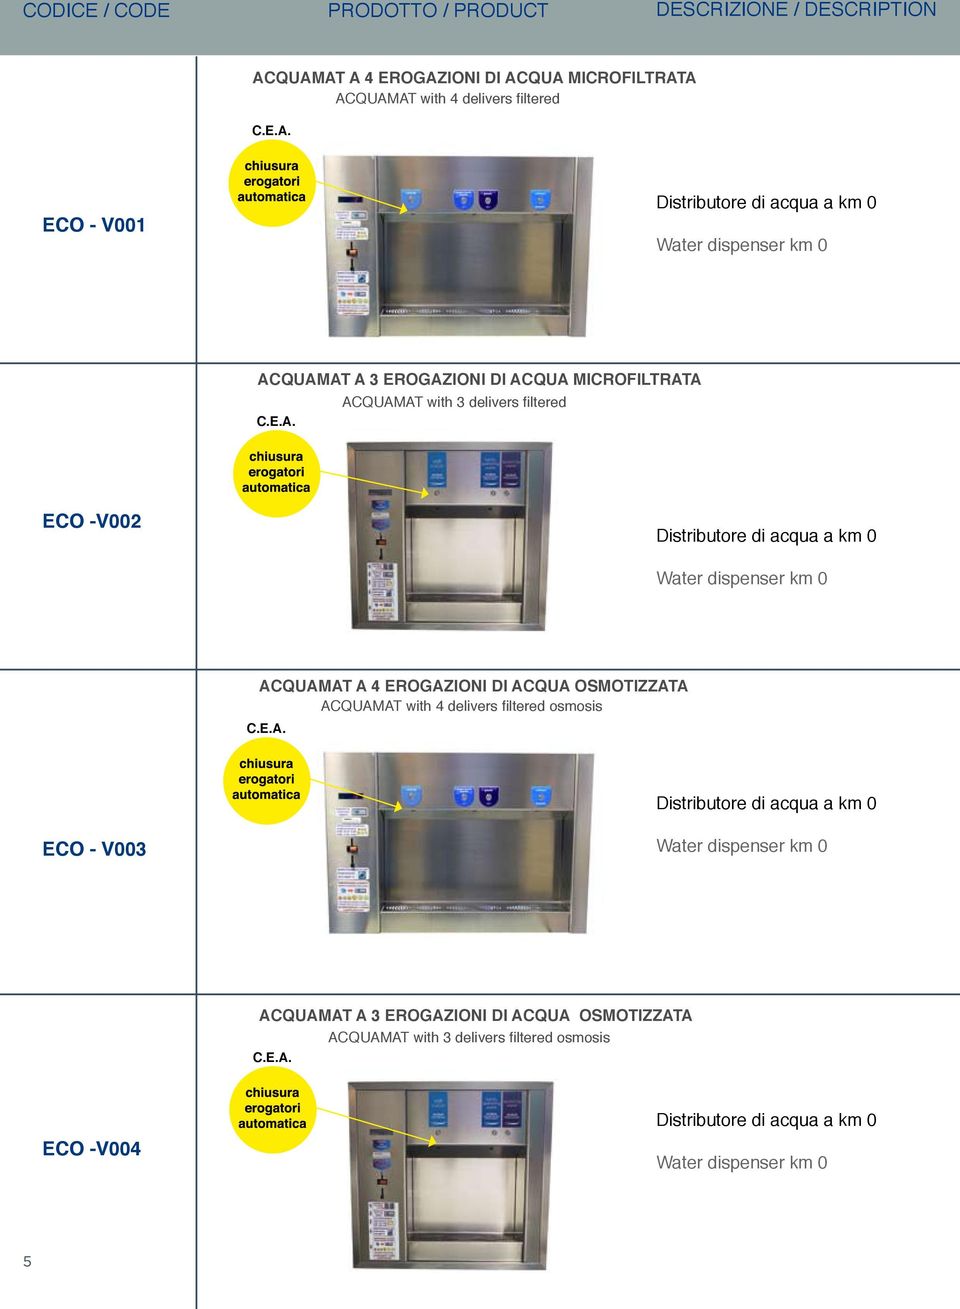 E.A. ACQUAMAT with 3 delivers filtered ECO -V002 Distributore di acqua a km 0 Water dispenser km 0 ACQUAMAT A 4 EROGAZIONI DI ACQUA OSMOTIZZATA ACQUAMAT with 4